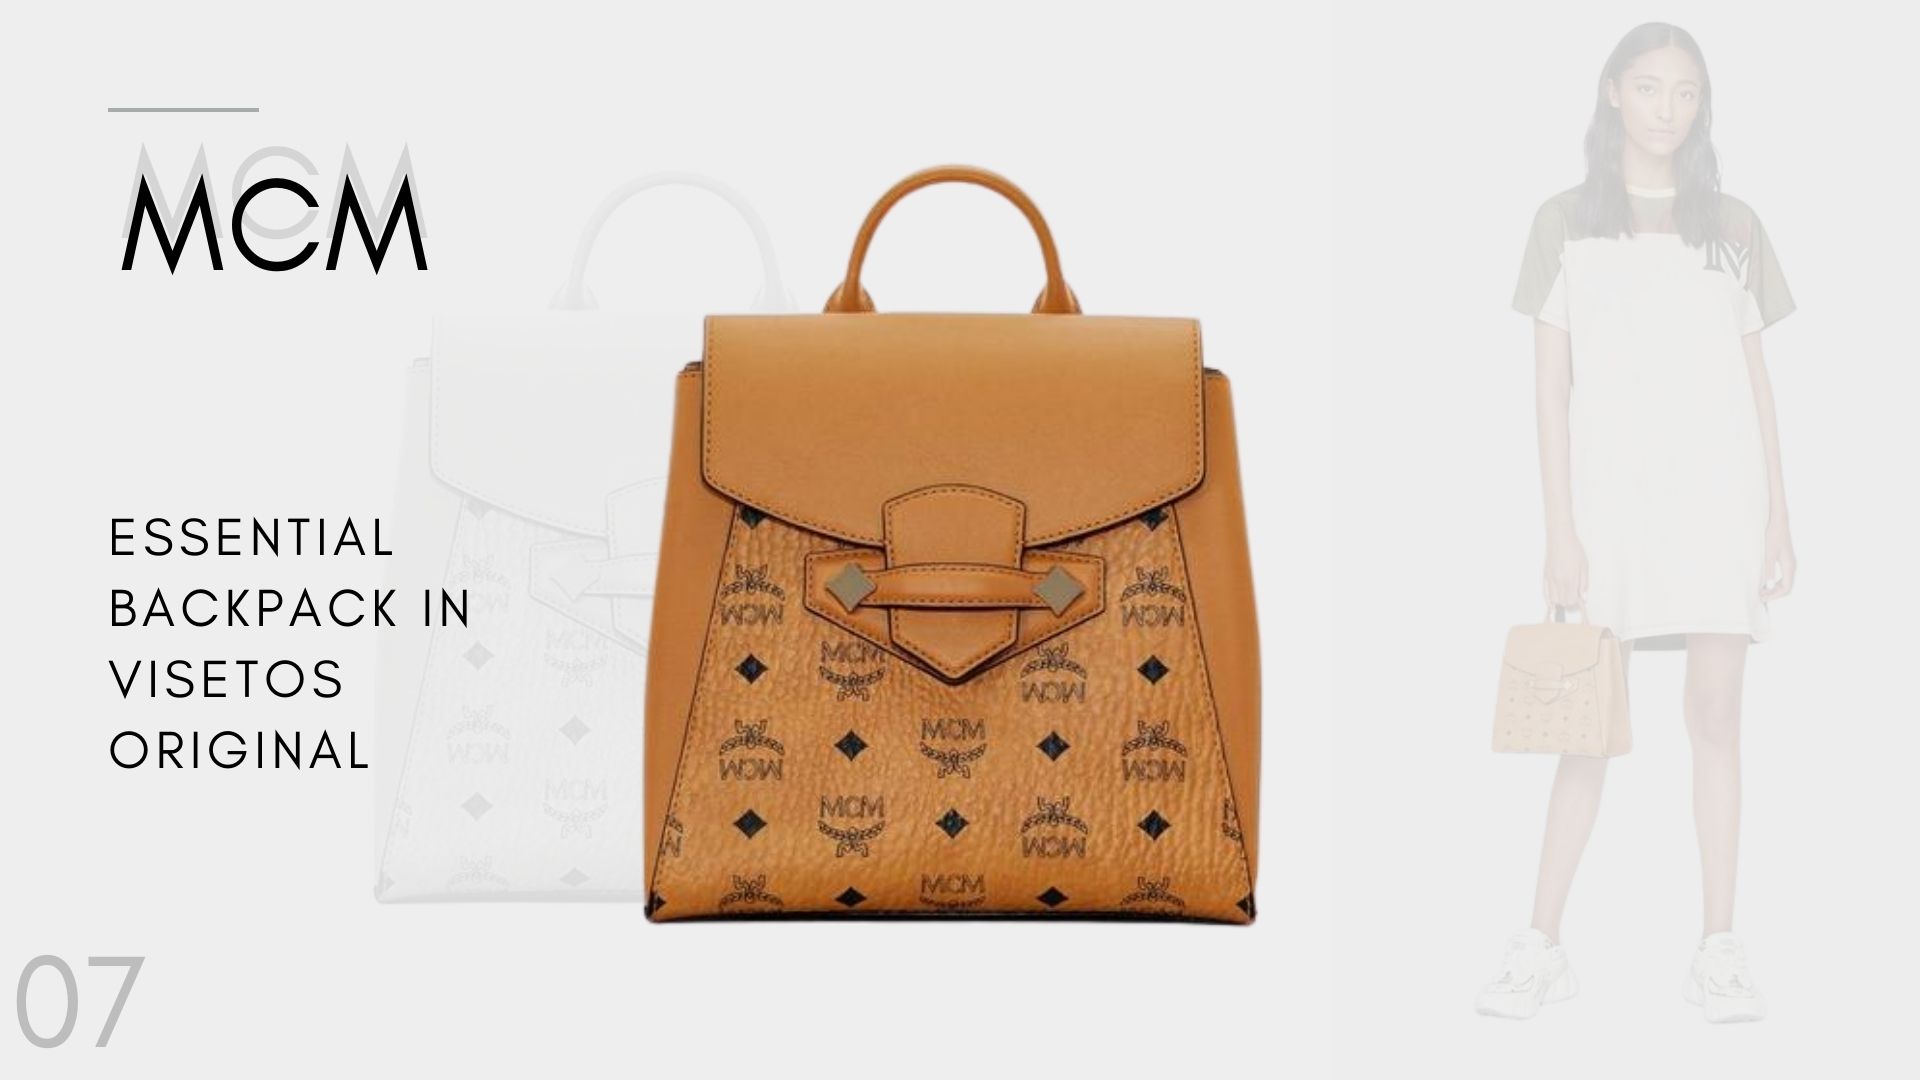 เจาะลึกราคากระเป๋า MCM มาแรง 2020 !! Essential Backpack in Visetos Original